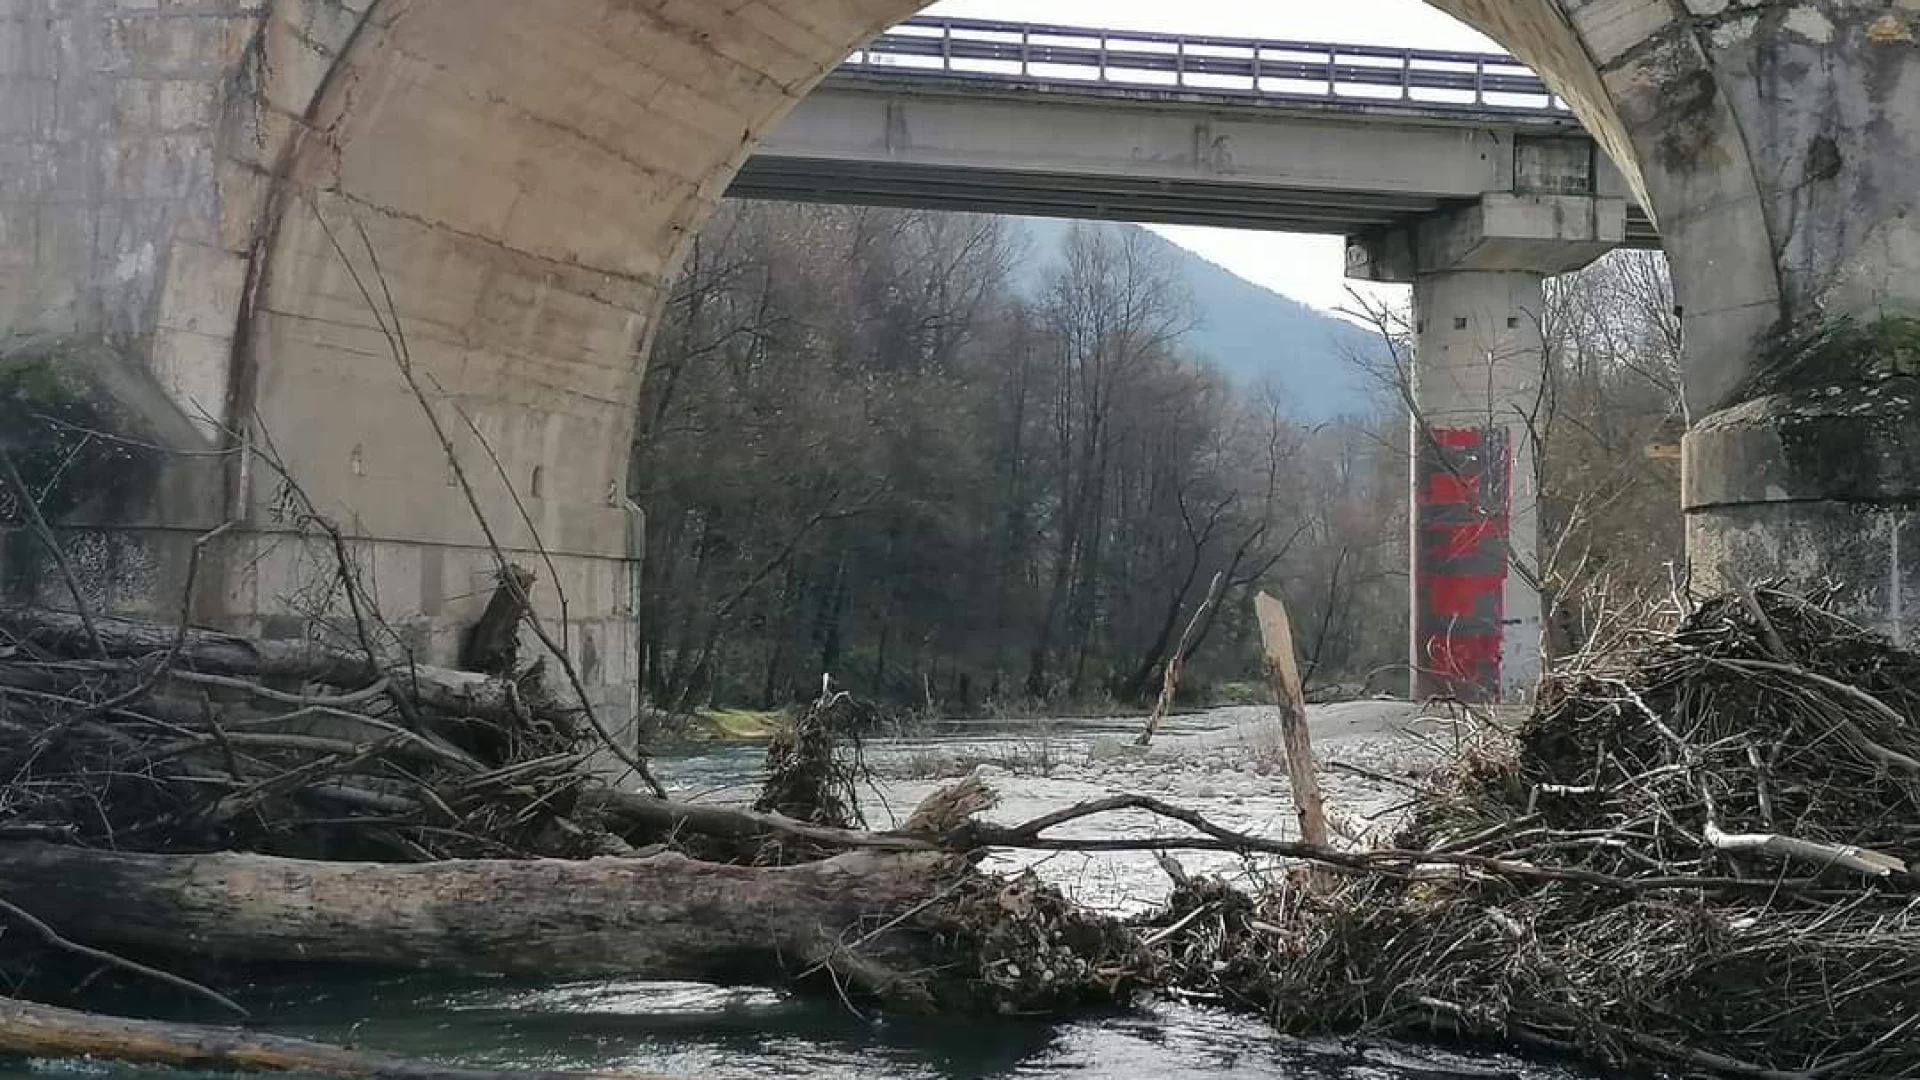 Roccaravindola: fiume Volturno ostruito all’altezza del Ponte dei 25 Archi da grossi alberi trasportati dalla corrente. Situazione da monitorare.